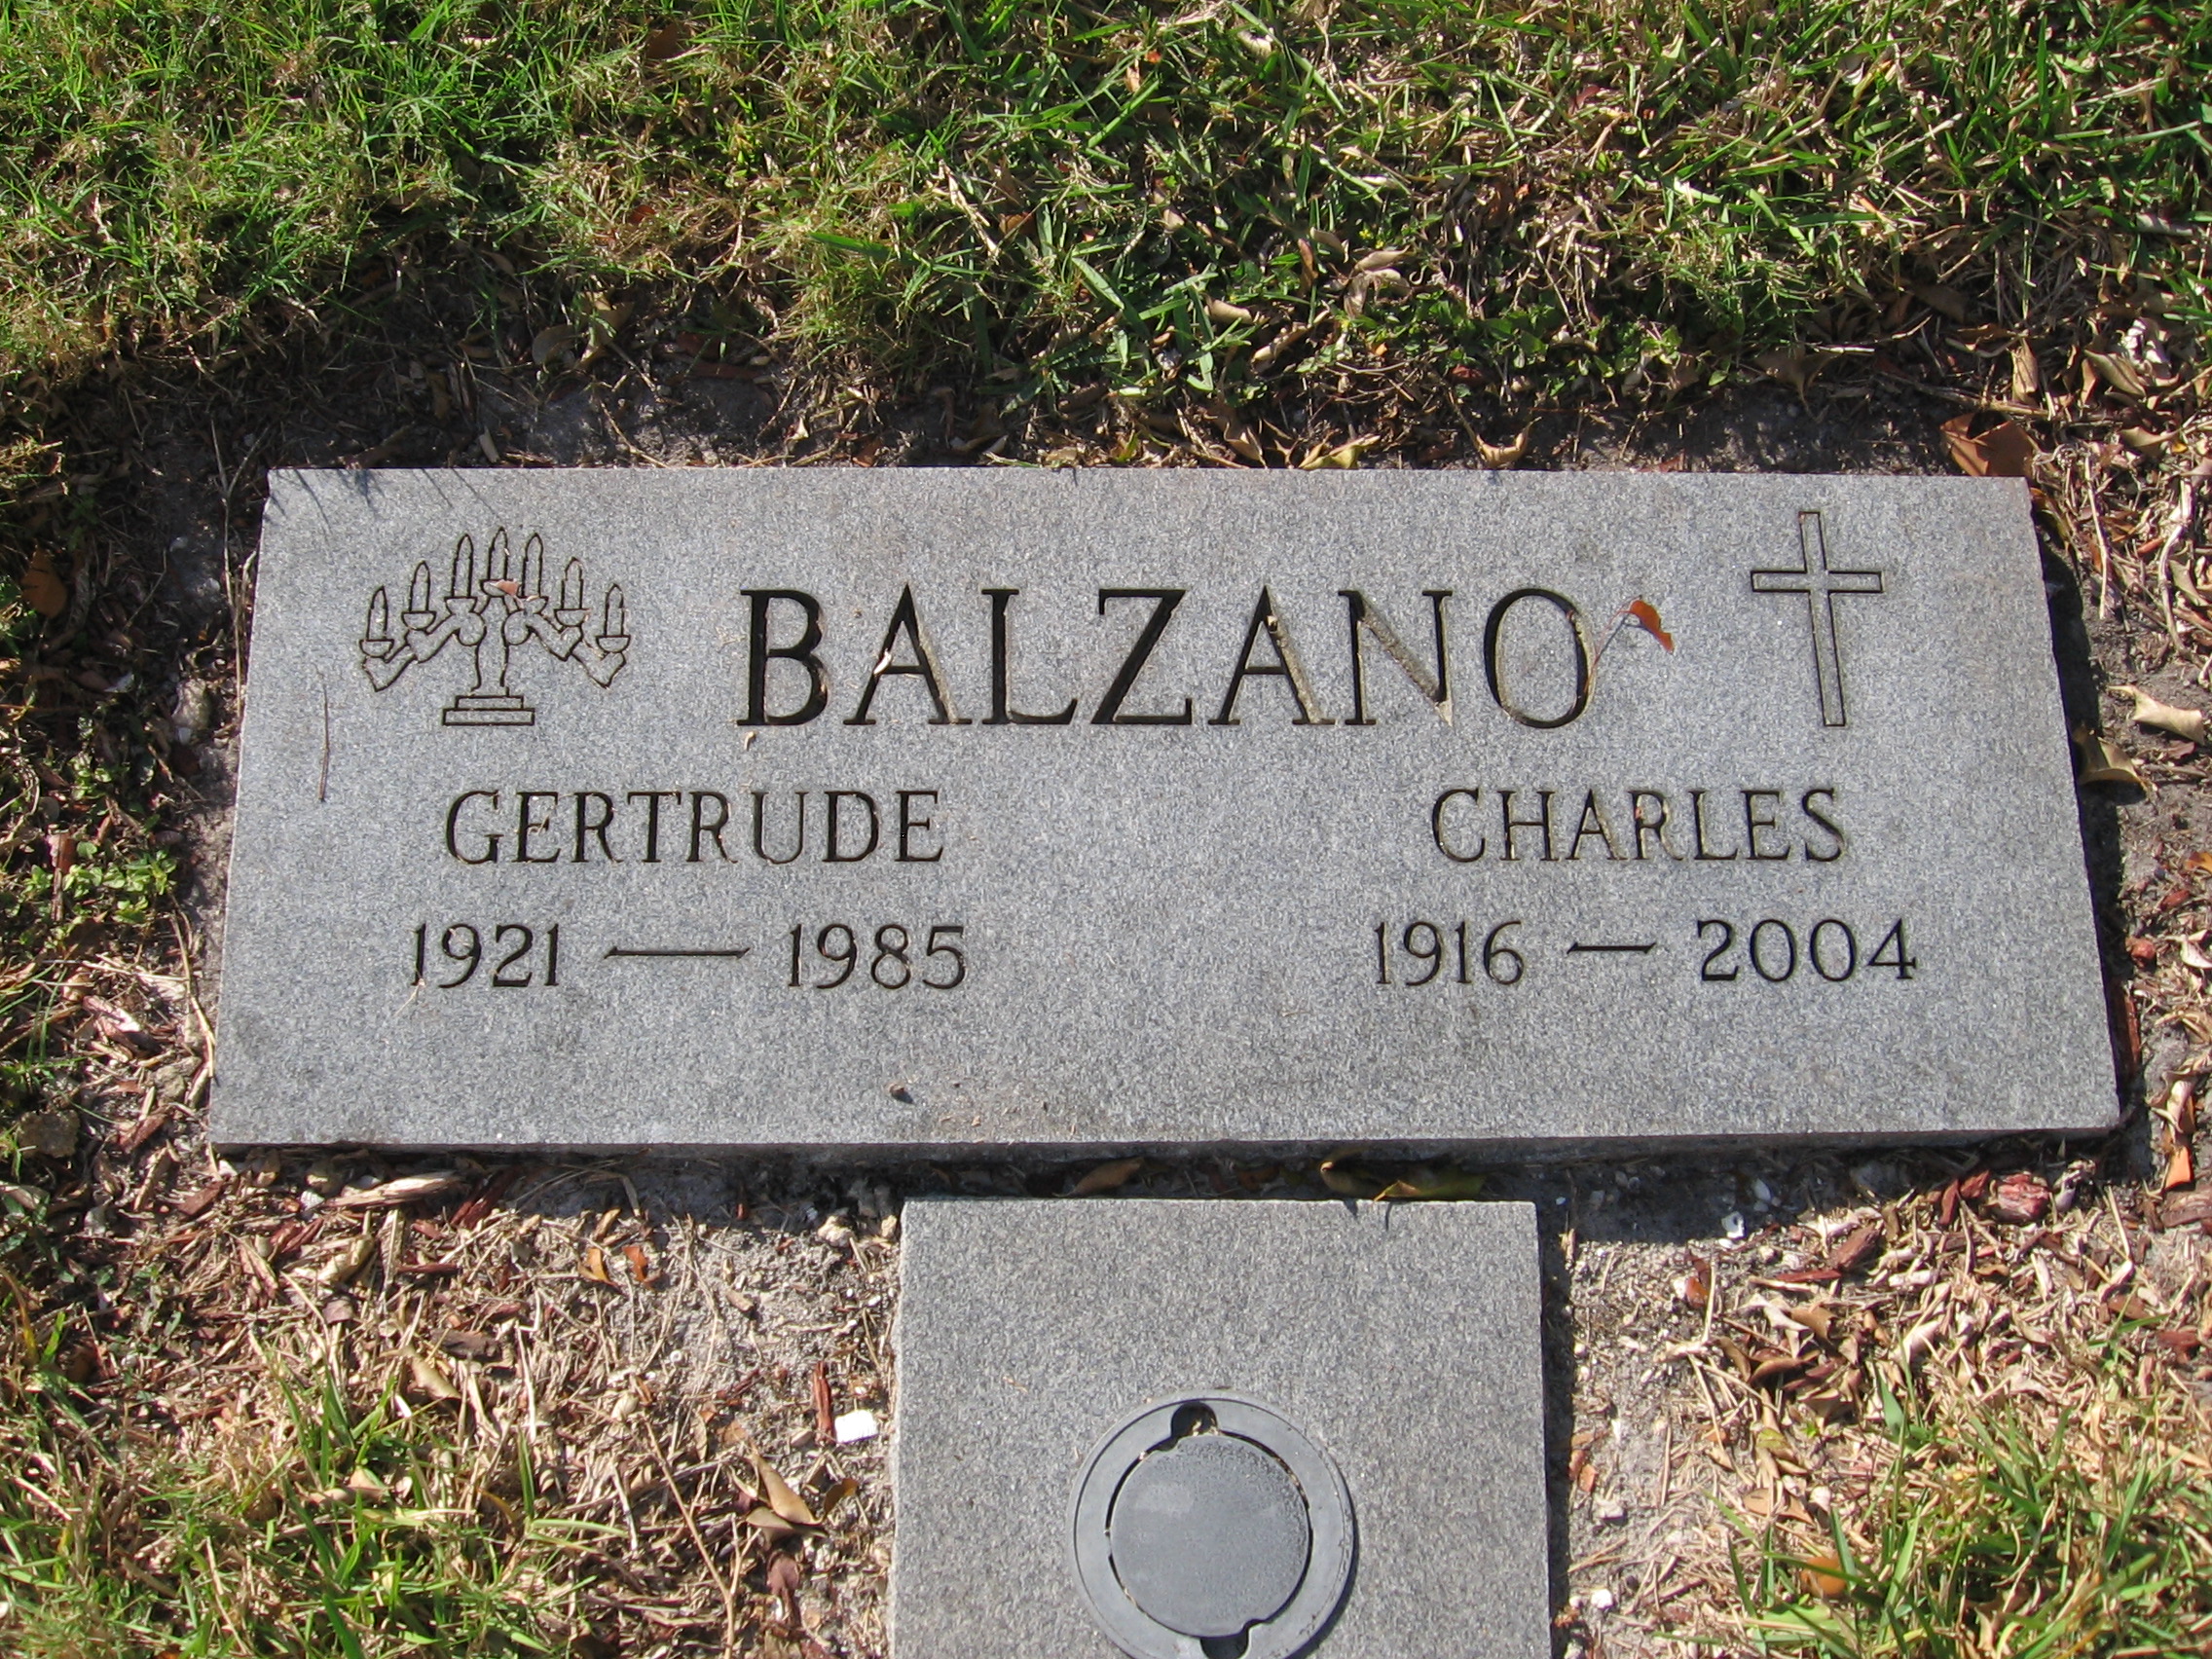 Gertrude Balzano